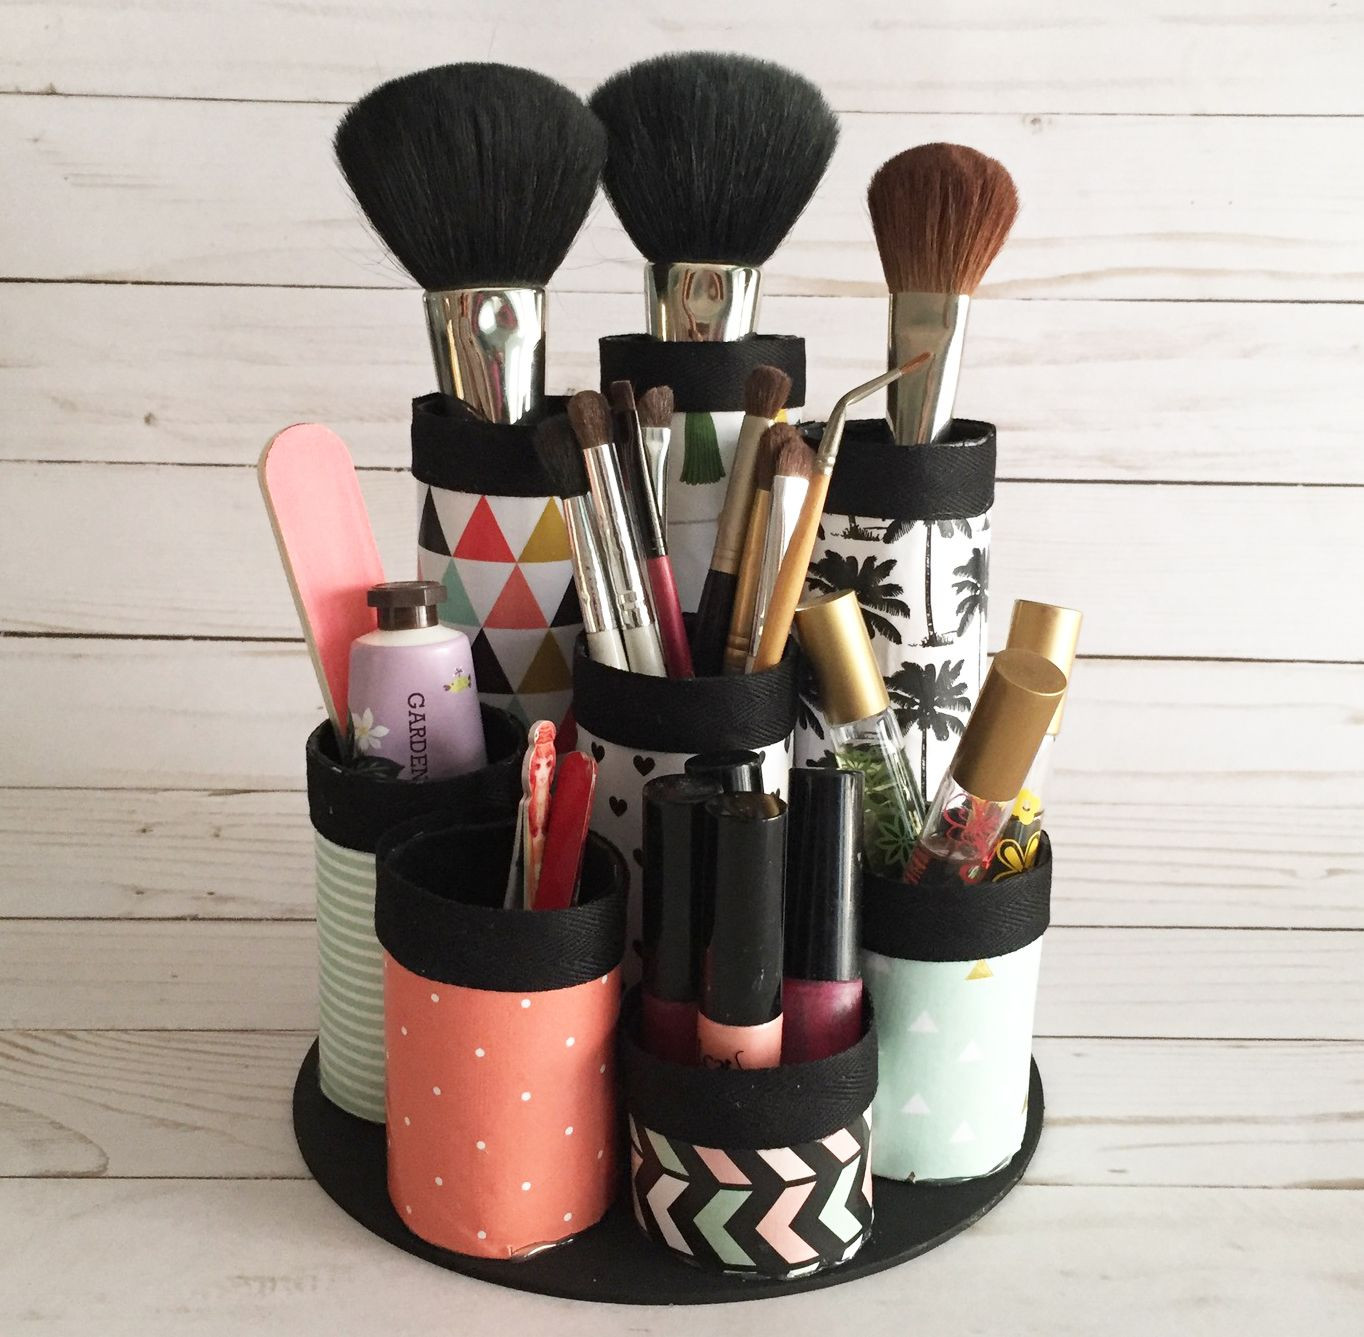 DIY Makeup Organizer Cardboard
 DIY Makeup Organizer Made from recycled paper towel tubes